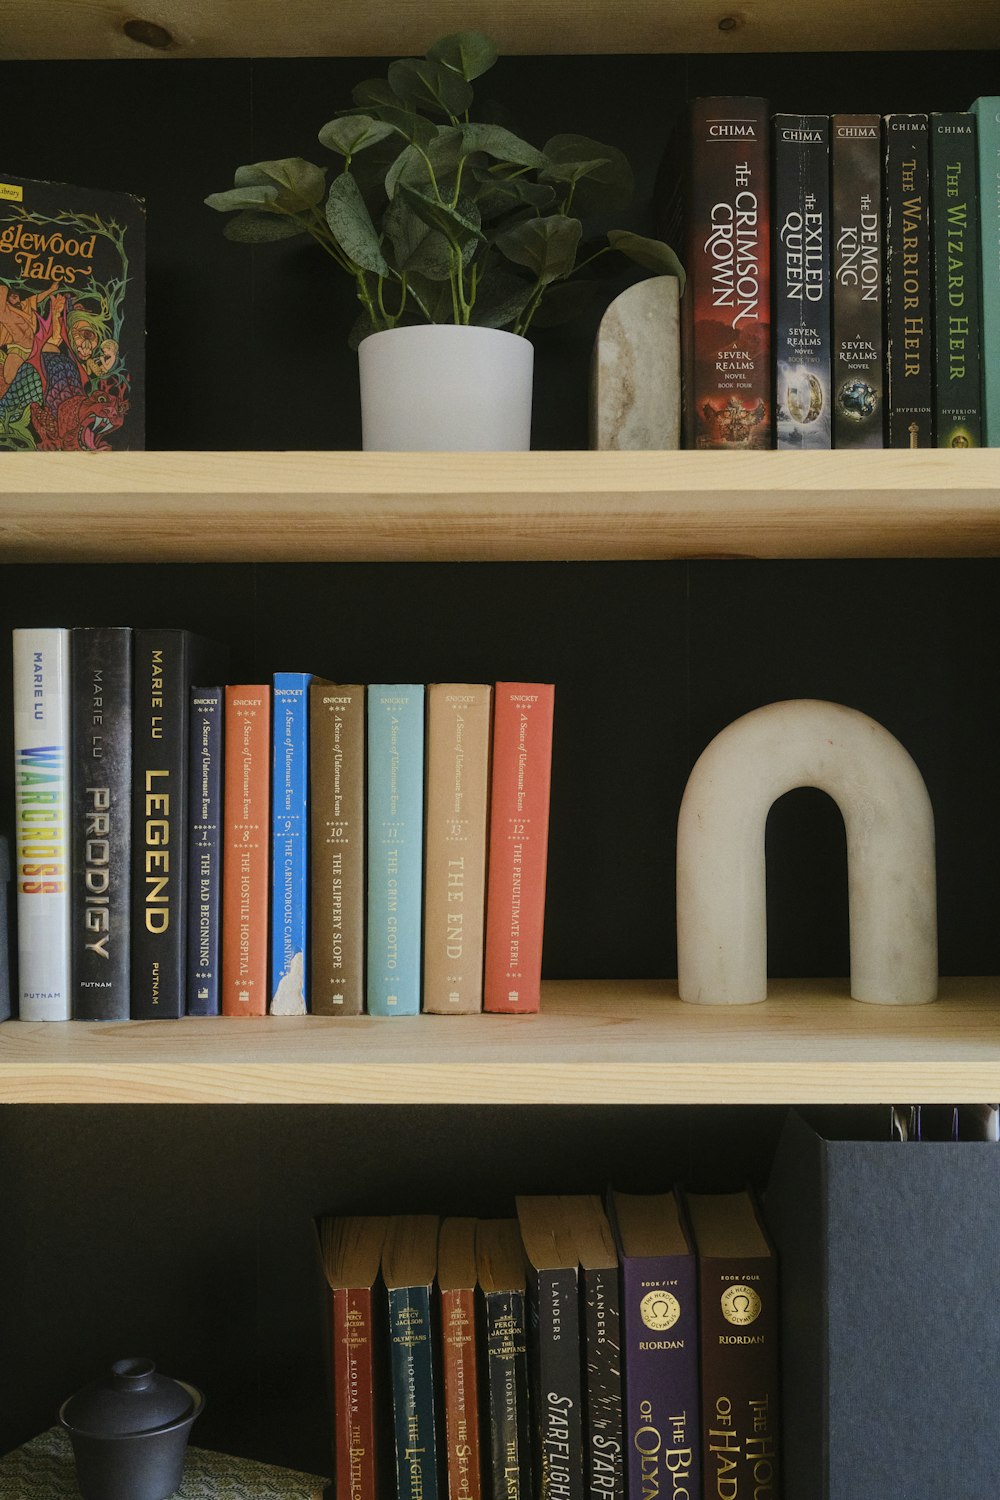 Una estantería llena de muchos libros junto a una planta en maceta